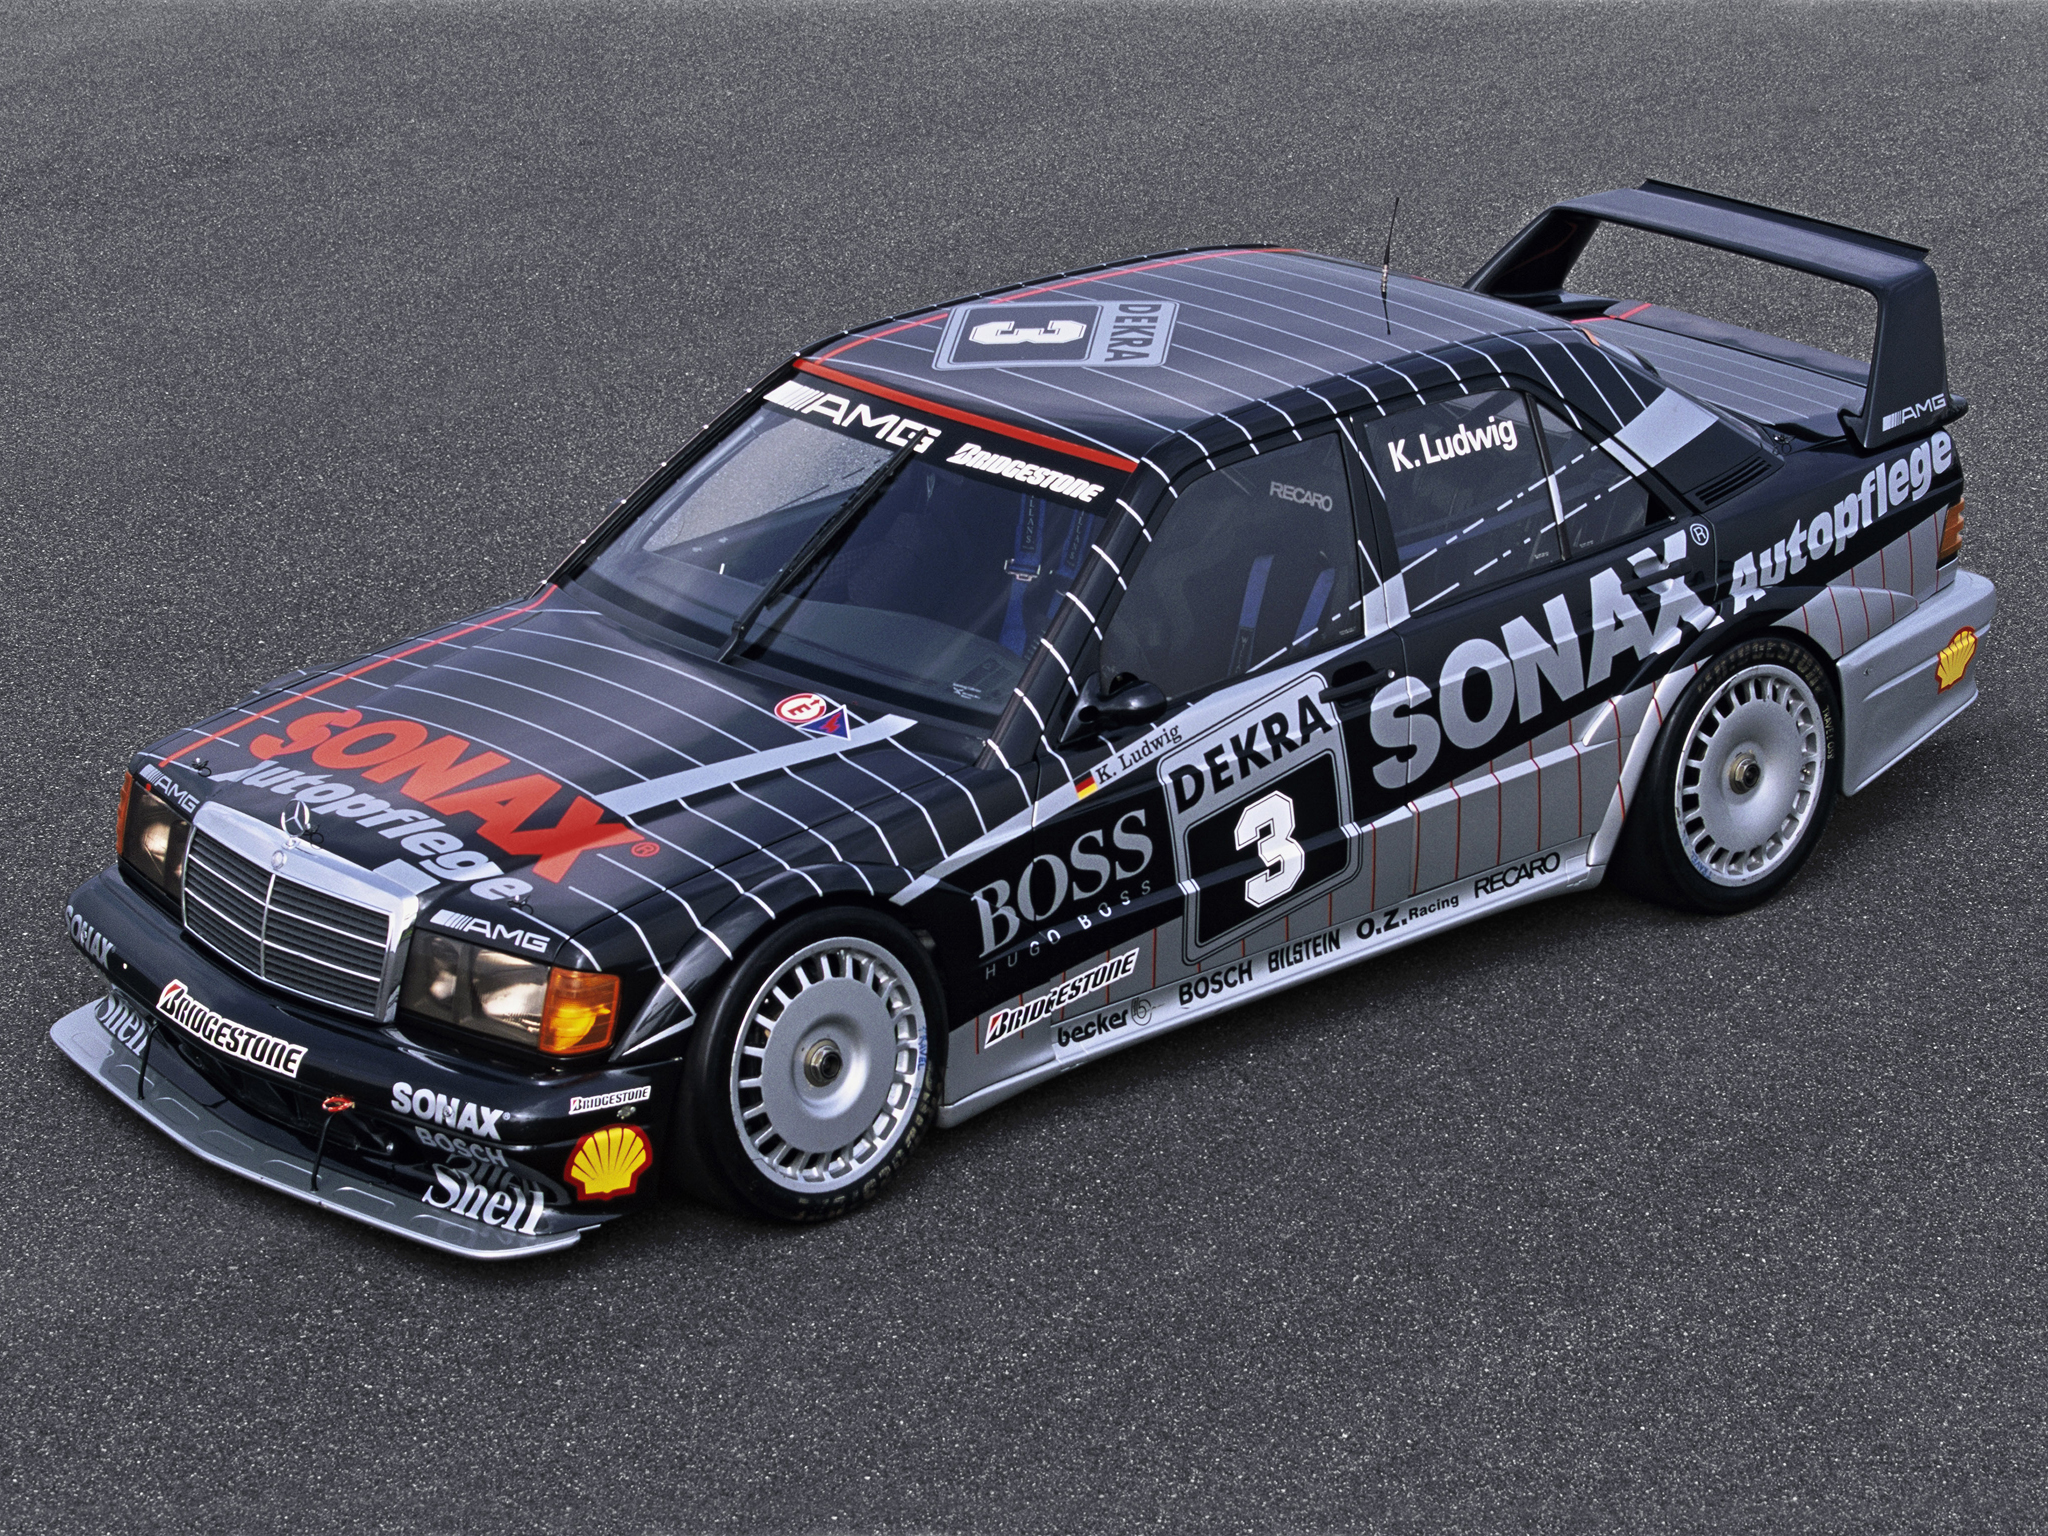 1991, Mercedes, Benz, Amg, 190, Evolution, I i, Dtm, W201, Race, Racing Wallpaper